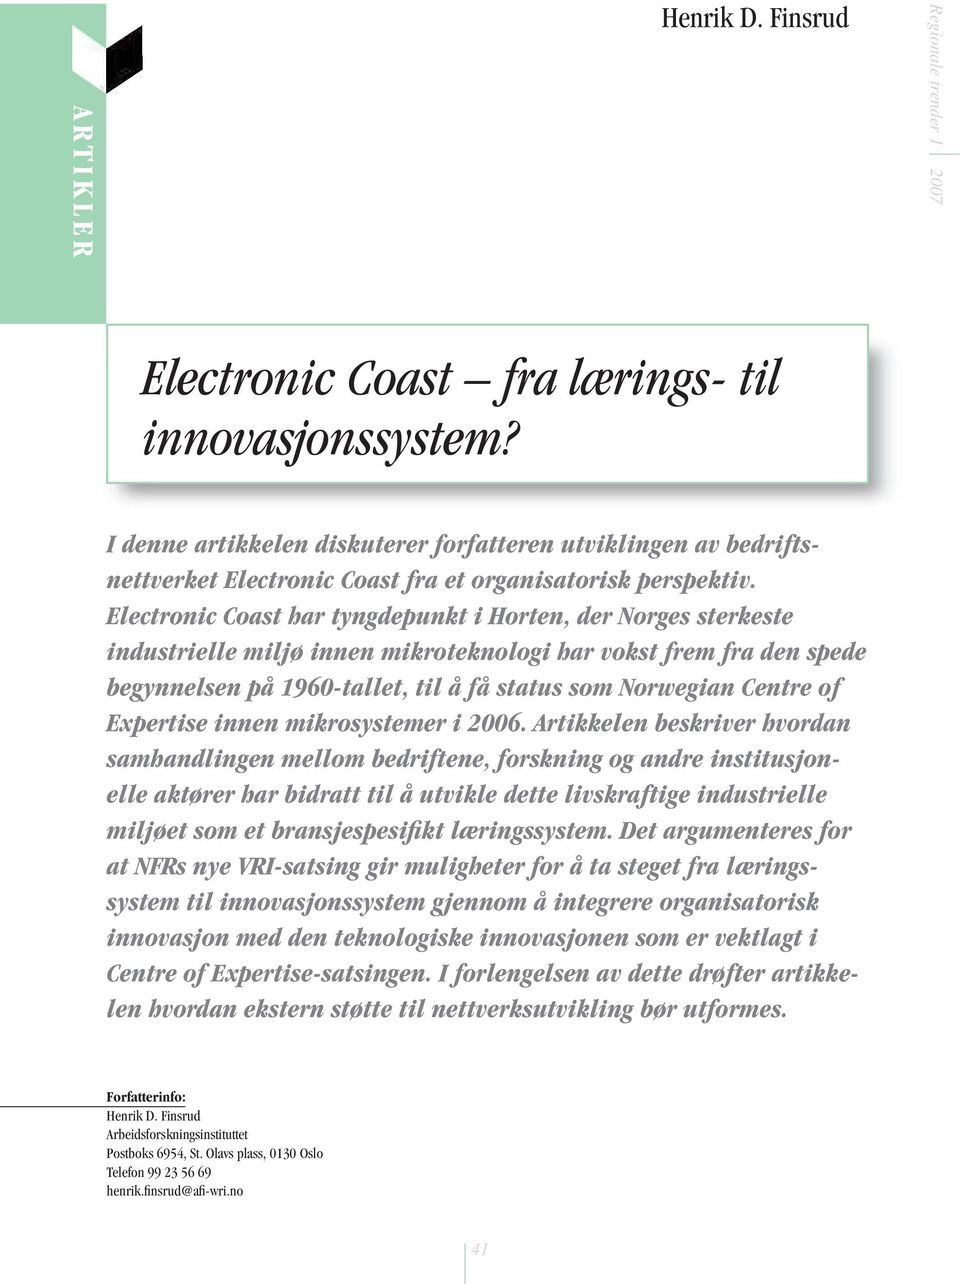 Electronic Coast har tyngdepunkt i Horten, der Norges sterkeste industrielle miljø innen mikroteknologi har vokst frem fra den spede begynnelsen på 1960-tallet, til å få status som Norwegian Centre